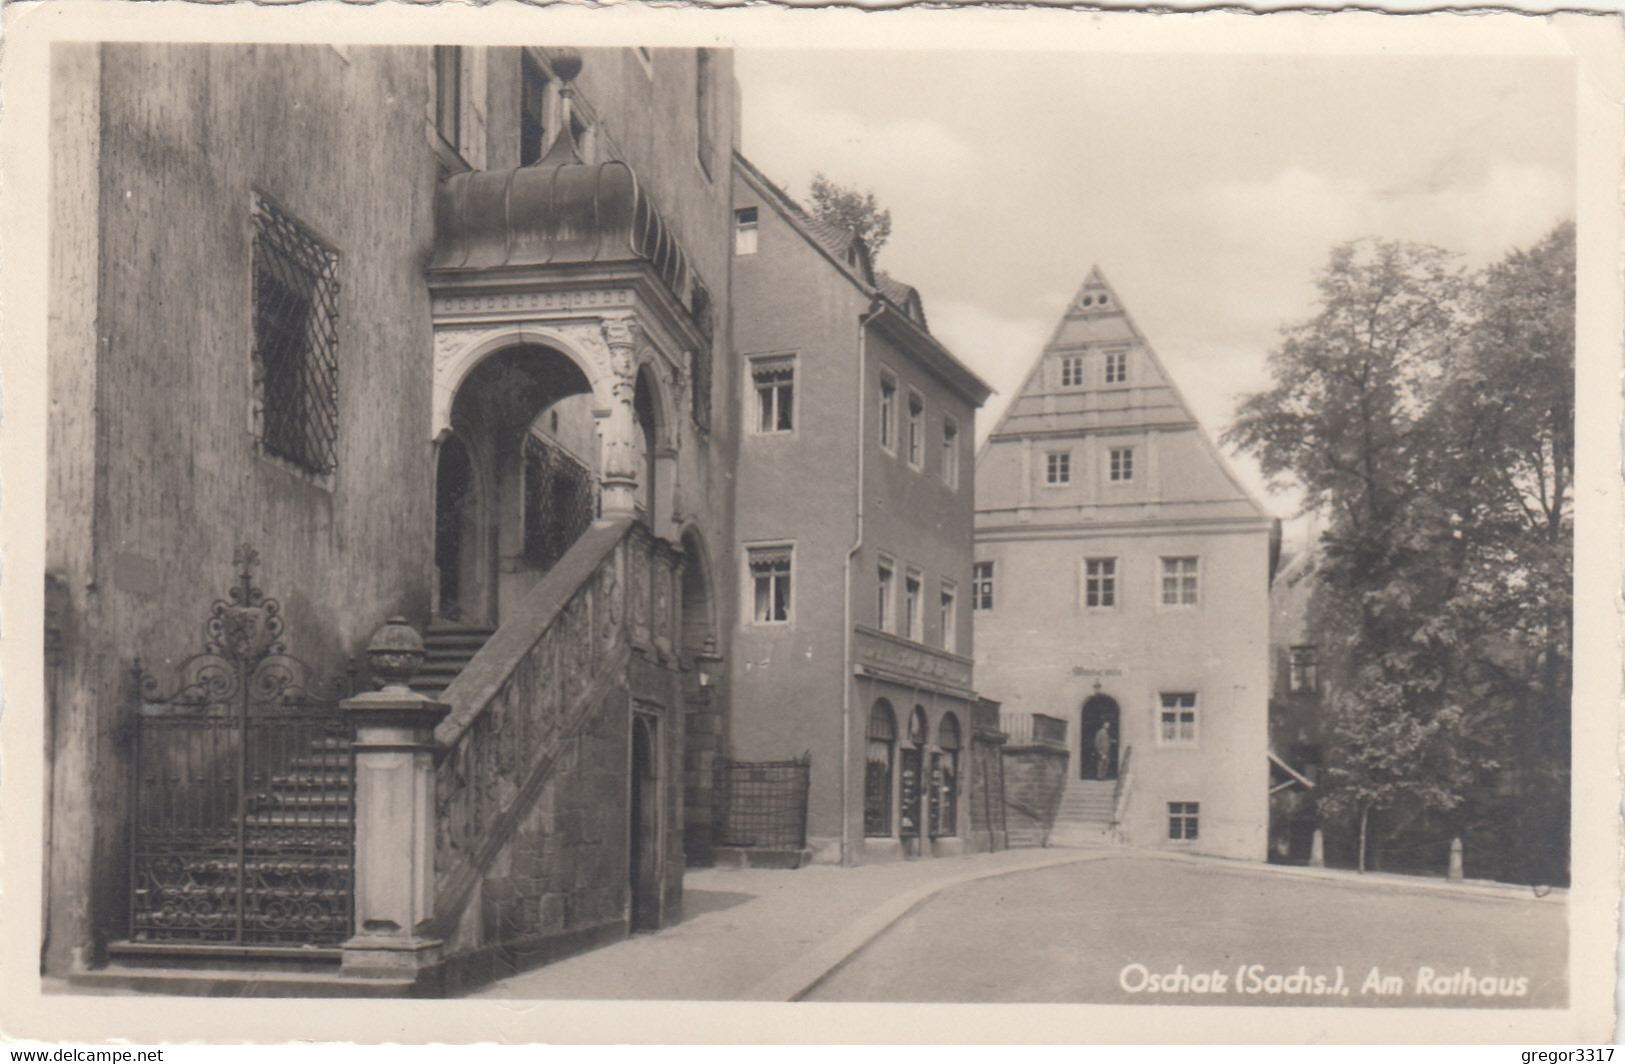 826) OSCHATZ - Sachs. - Am Rathaus - Tolle Sehr Alte S/W AK !! 01.03.1954 - Oschatz